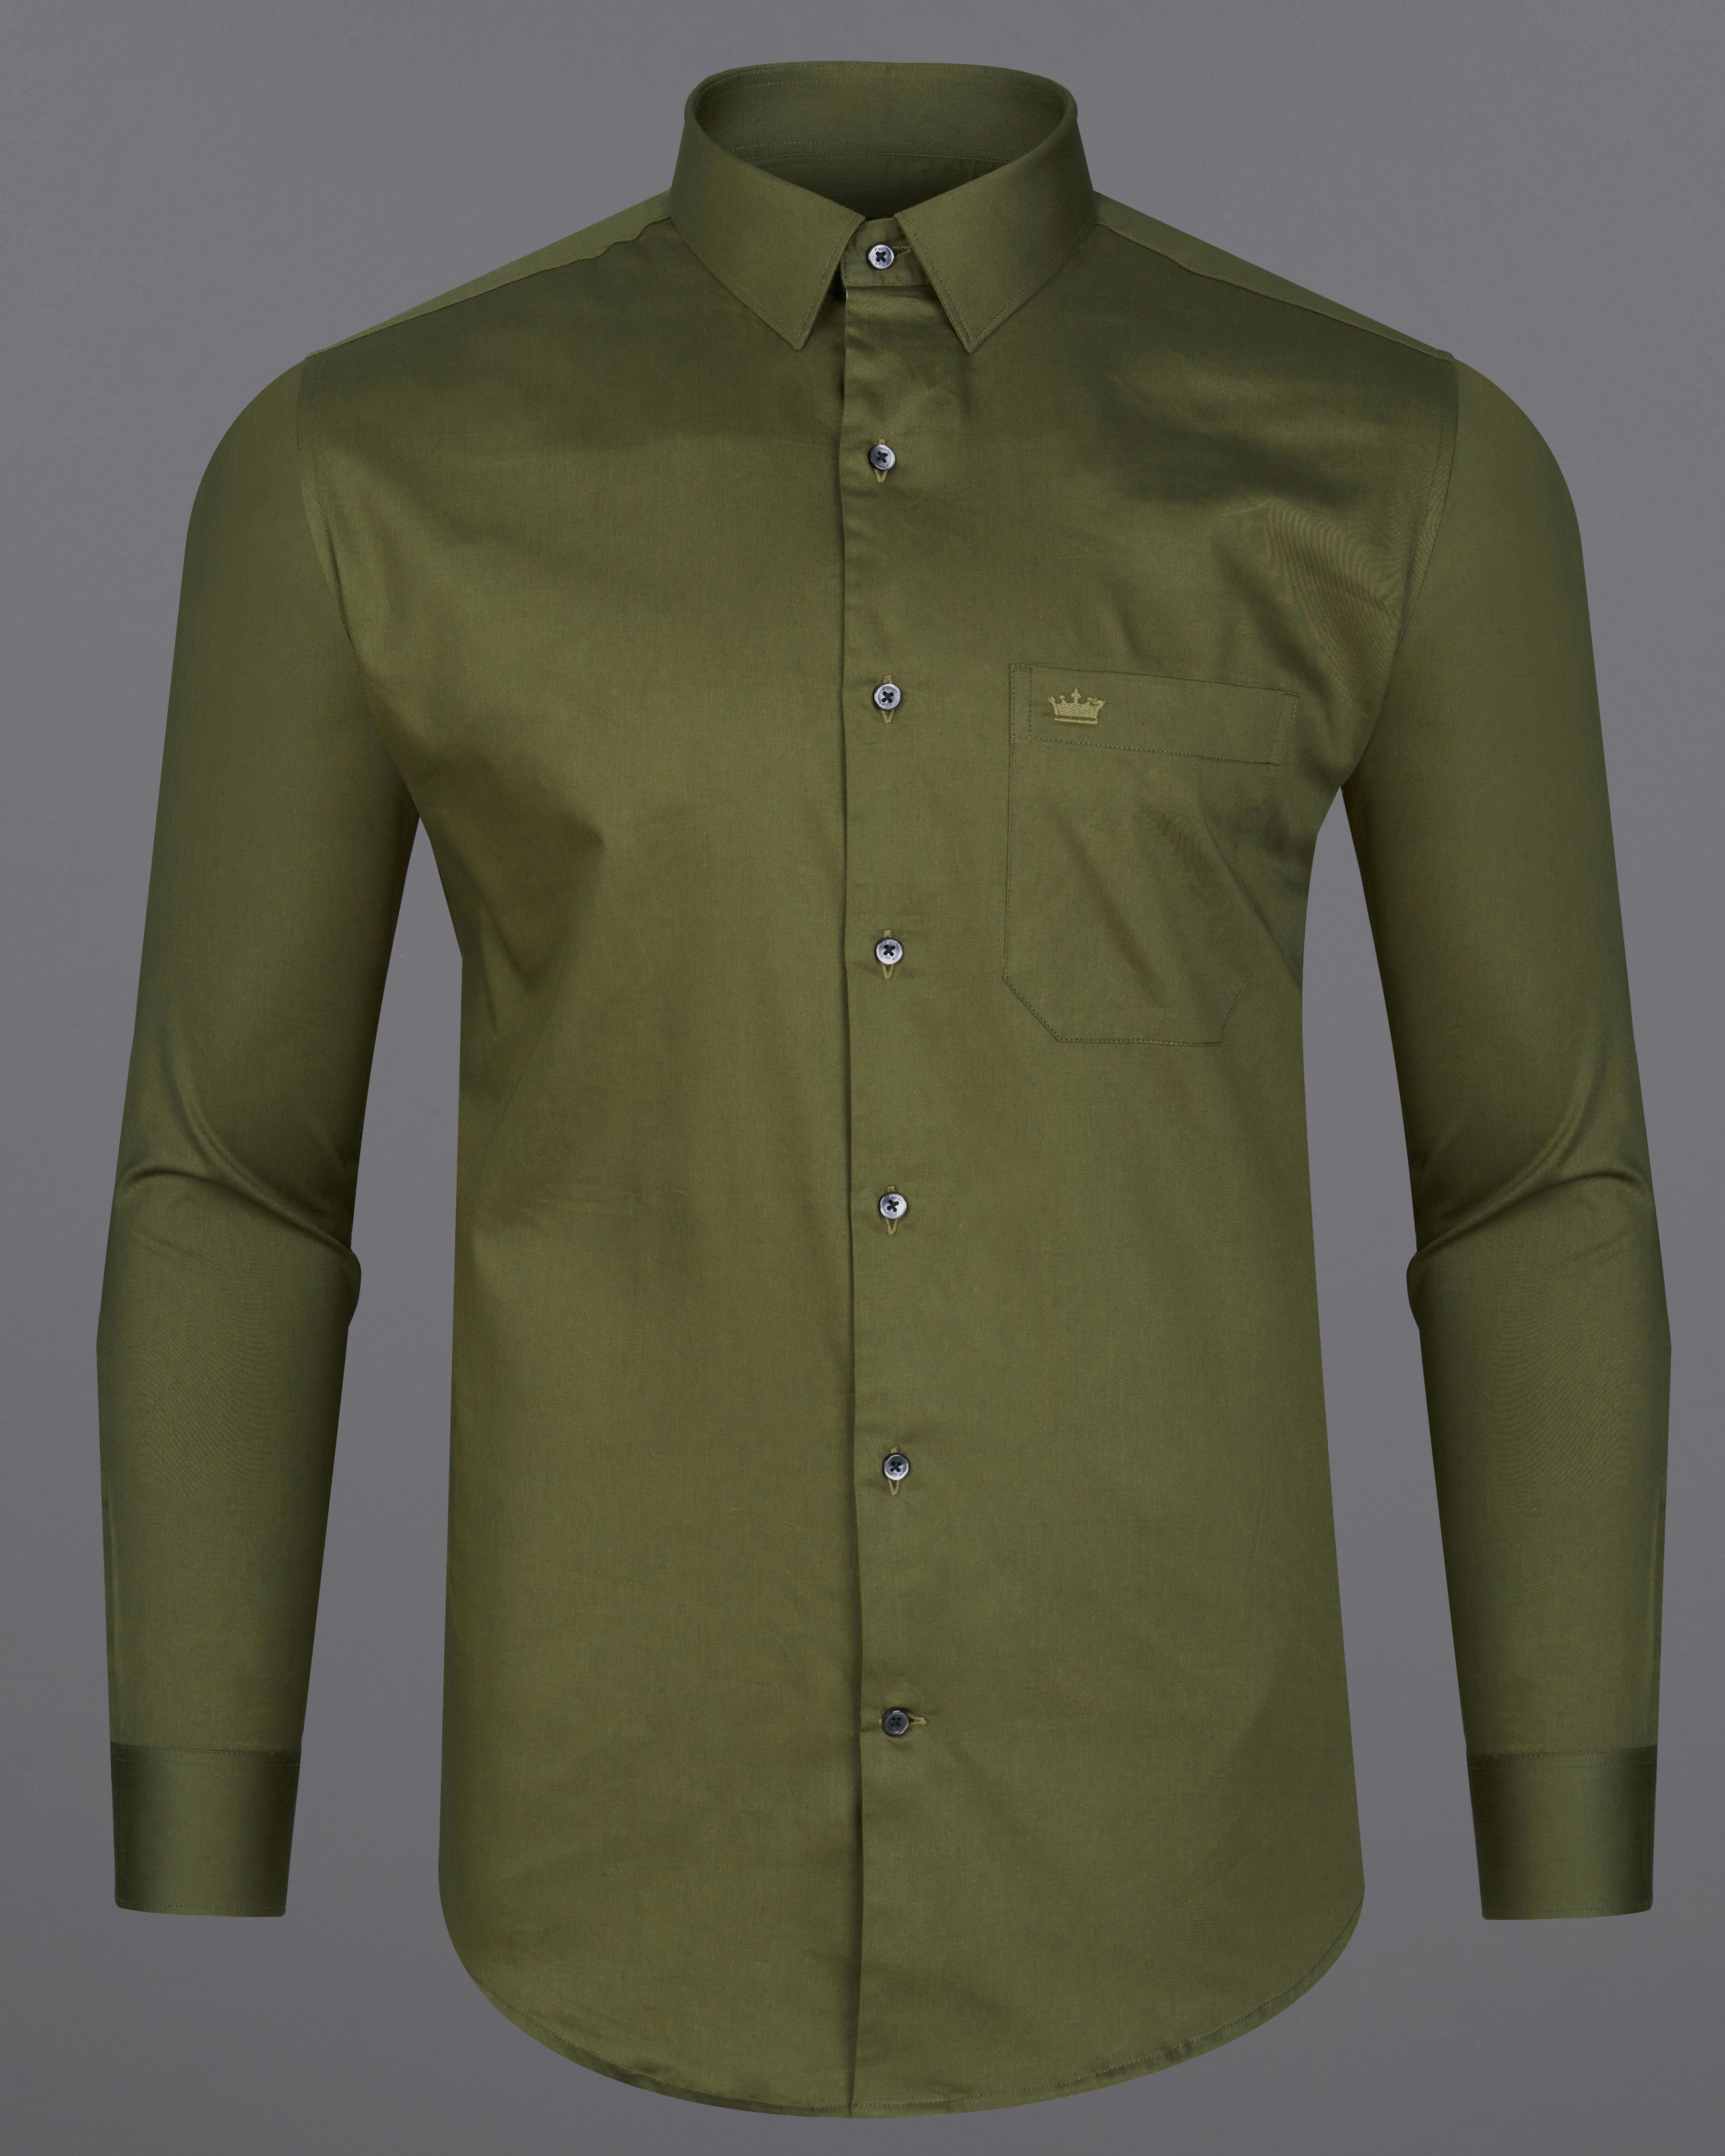 Fuscous Green Subtle Sheen Super Soft Premium Cotton Shirt 8867-BLK-38, 8867-BLK-H-38, 8867-BLK-39, 8867-BLK-H-39, 8867-BLK-40, 8867-BLK-H-40, 8867-BLK-42, 8867-BLK-H-42, 8867-BLK-44, 8867-BLK-H-44, 8867-BLK-46, 8867-BLK-H-46, 8867-BLK-48, 8867-BLK-H-48, 8867-BLK-50, 8867-BLK-H-50, 8867-BLK-52, 8867-BLK-H-52